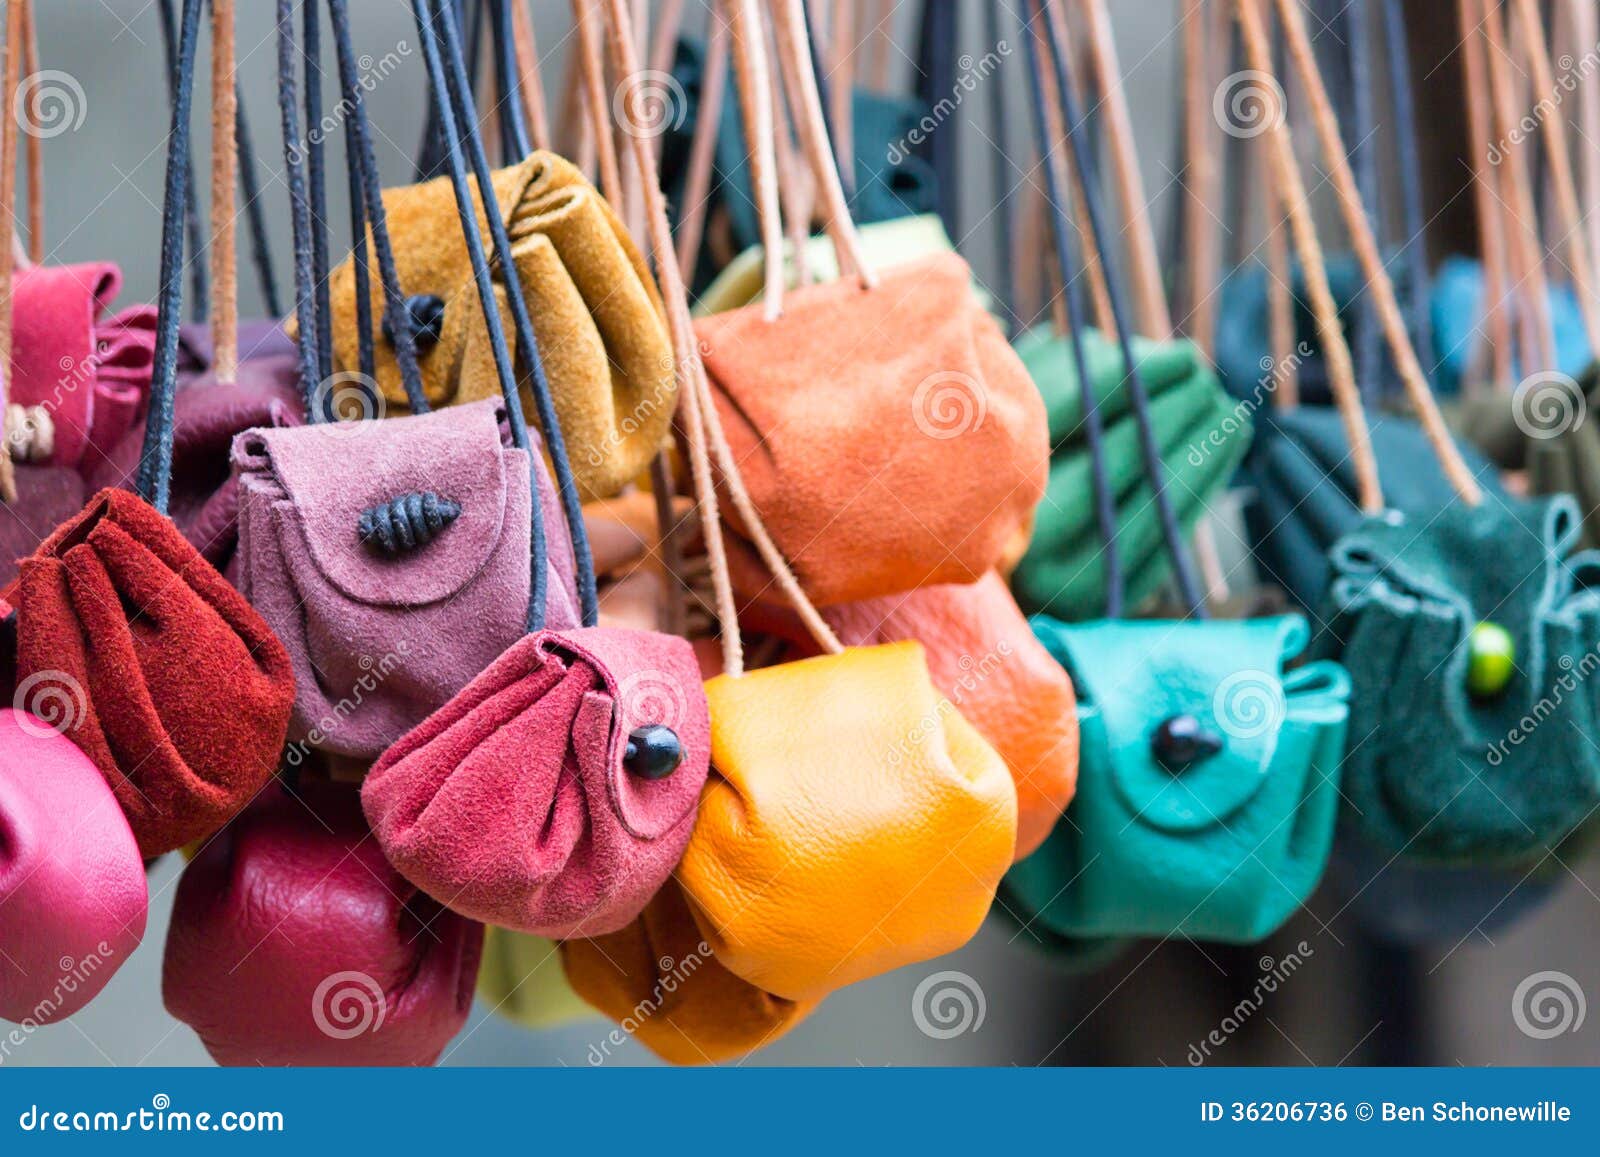 Χρωματισμένα moneybags δέρματος που κρεμούν στις δαντέλλες. Διαφορετικά χρωματισμένα moneybags δέρματος που κρεμούν στις δαντέλλες